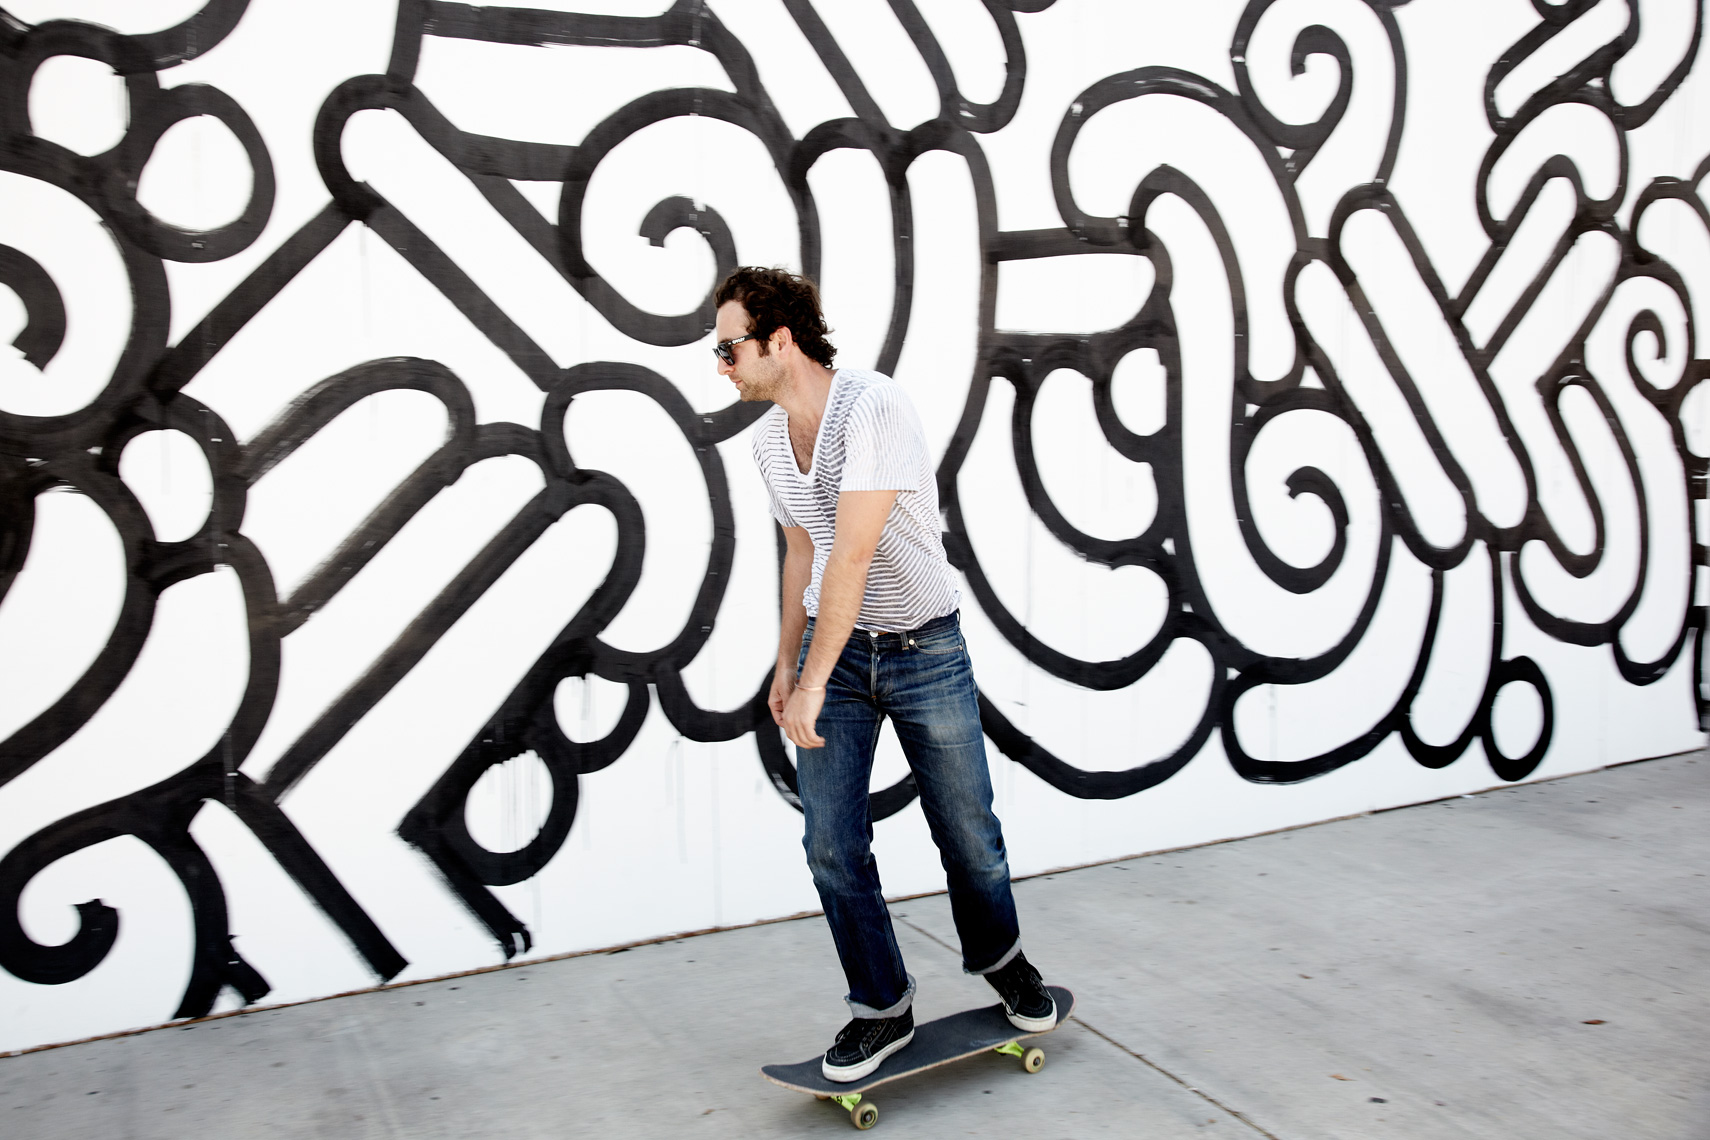 Skateboarding || Brian Stevens  || Photography